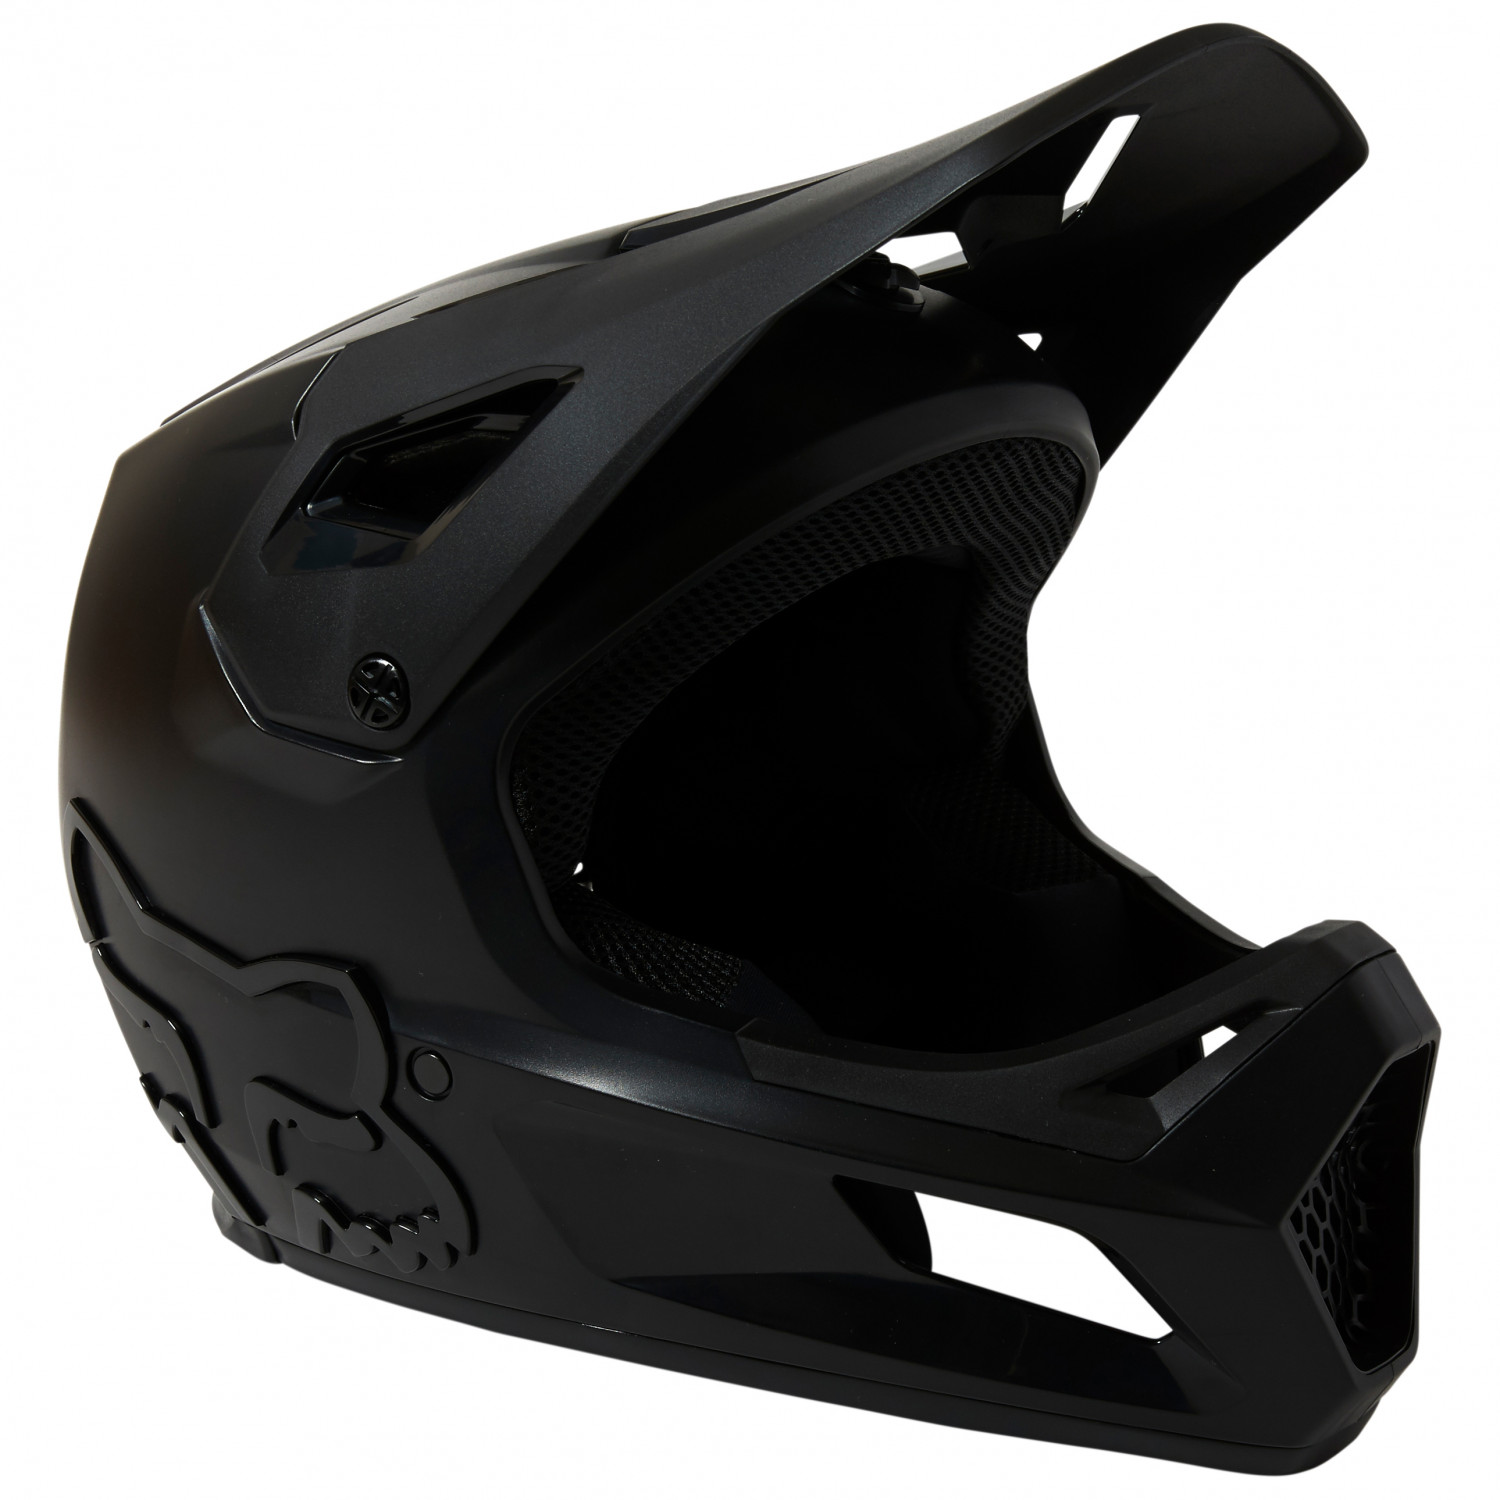 Велосипедный шлем Fox Racing Youth Rampage Helmet, цвет Black/Black козырек к шлему fox rampage pro carbon visor aqua черно красный пластик 04119 246 os